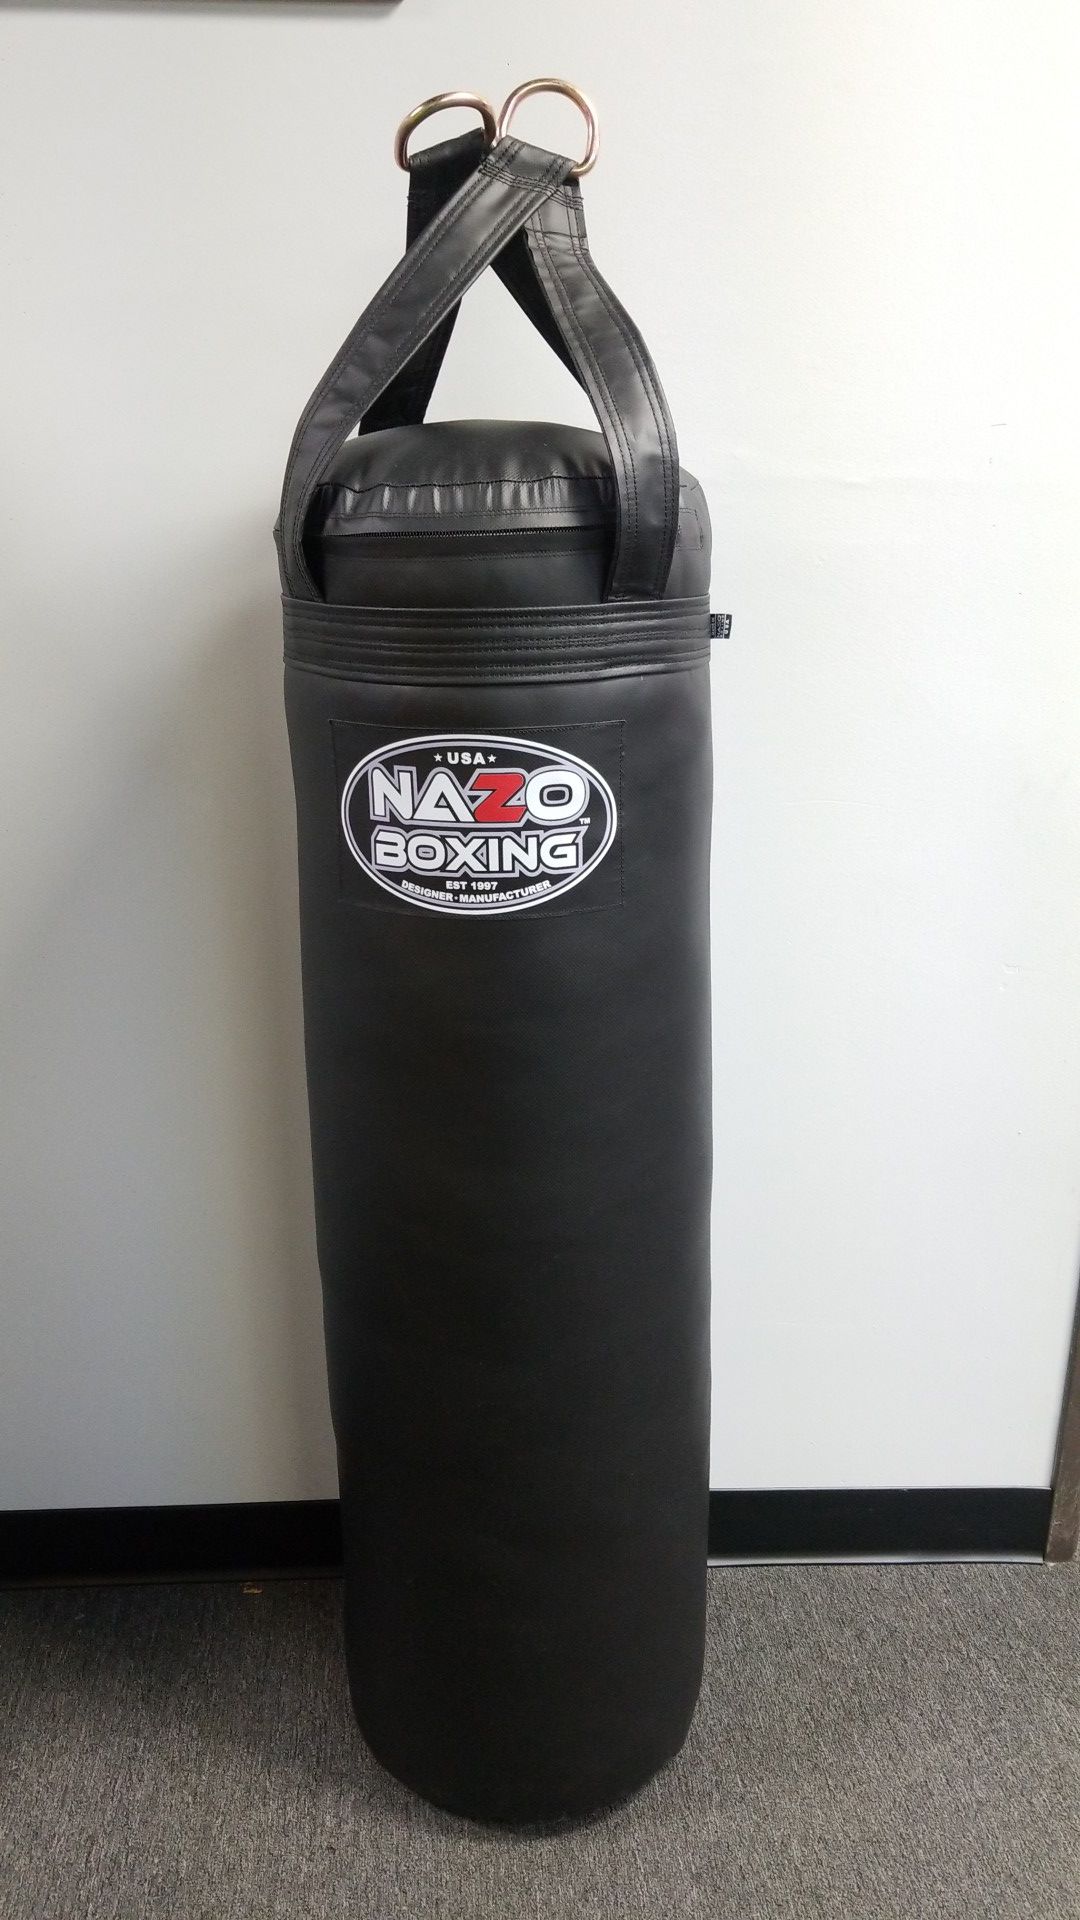 80 pound boxing punching bag